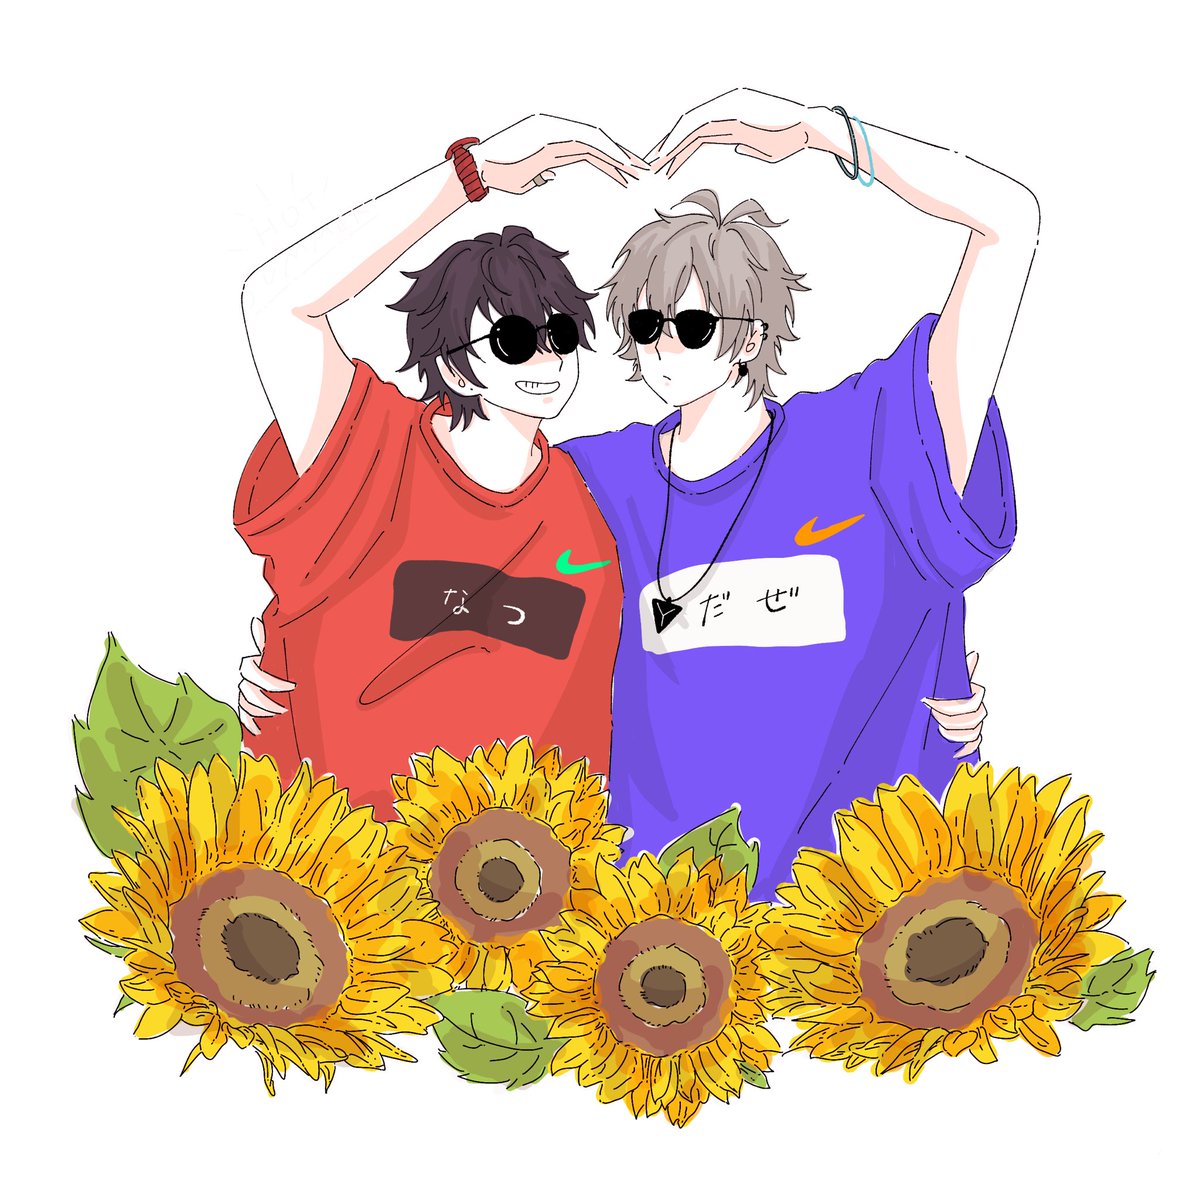 2boys multiple boys sunglasses male focus flower sunflower heart hands  illustration images